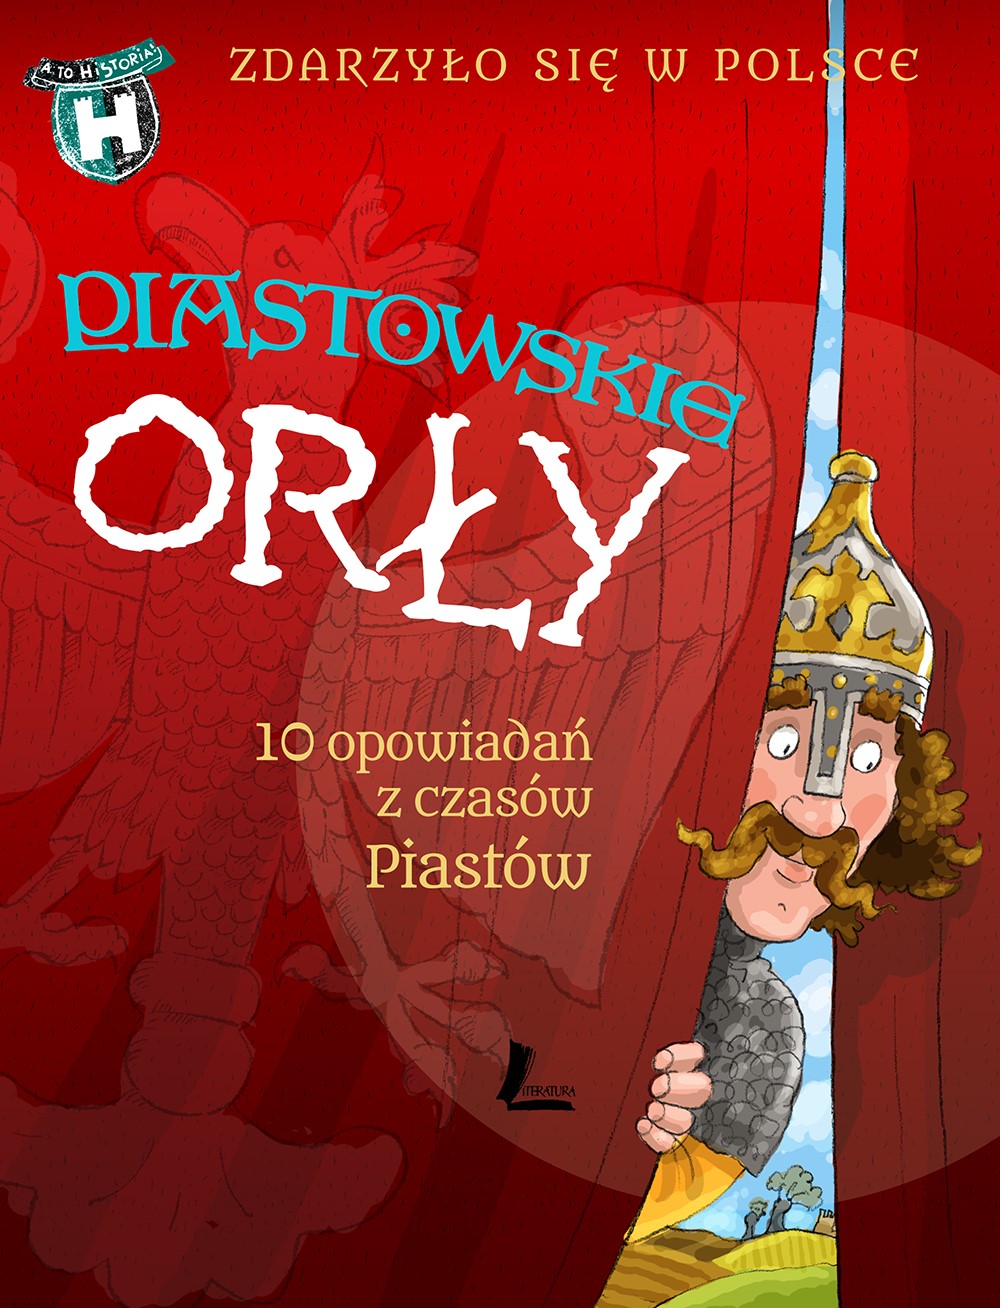 Okładka:Zdarzyło się w Polsce. Piastowskie Orły. 10 opowiadań z czasów Piastów 